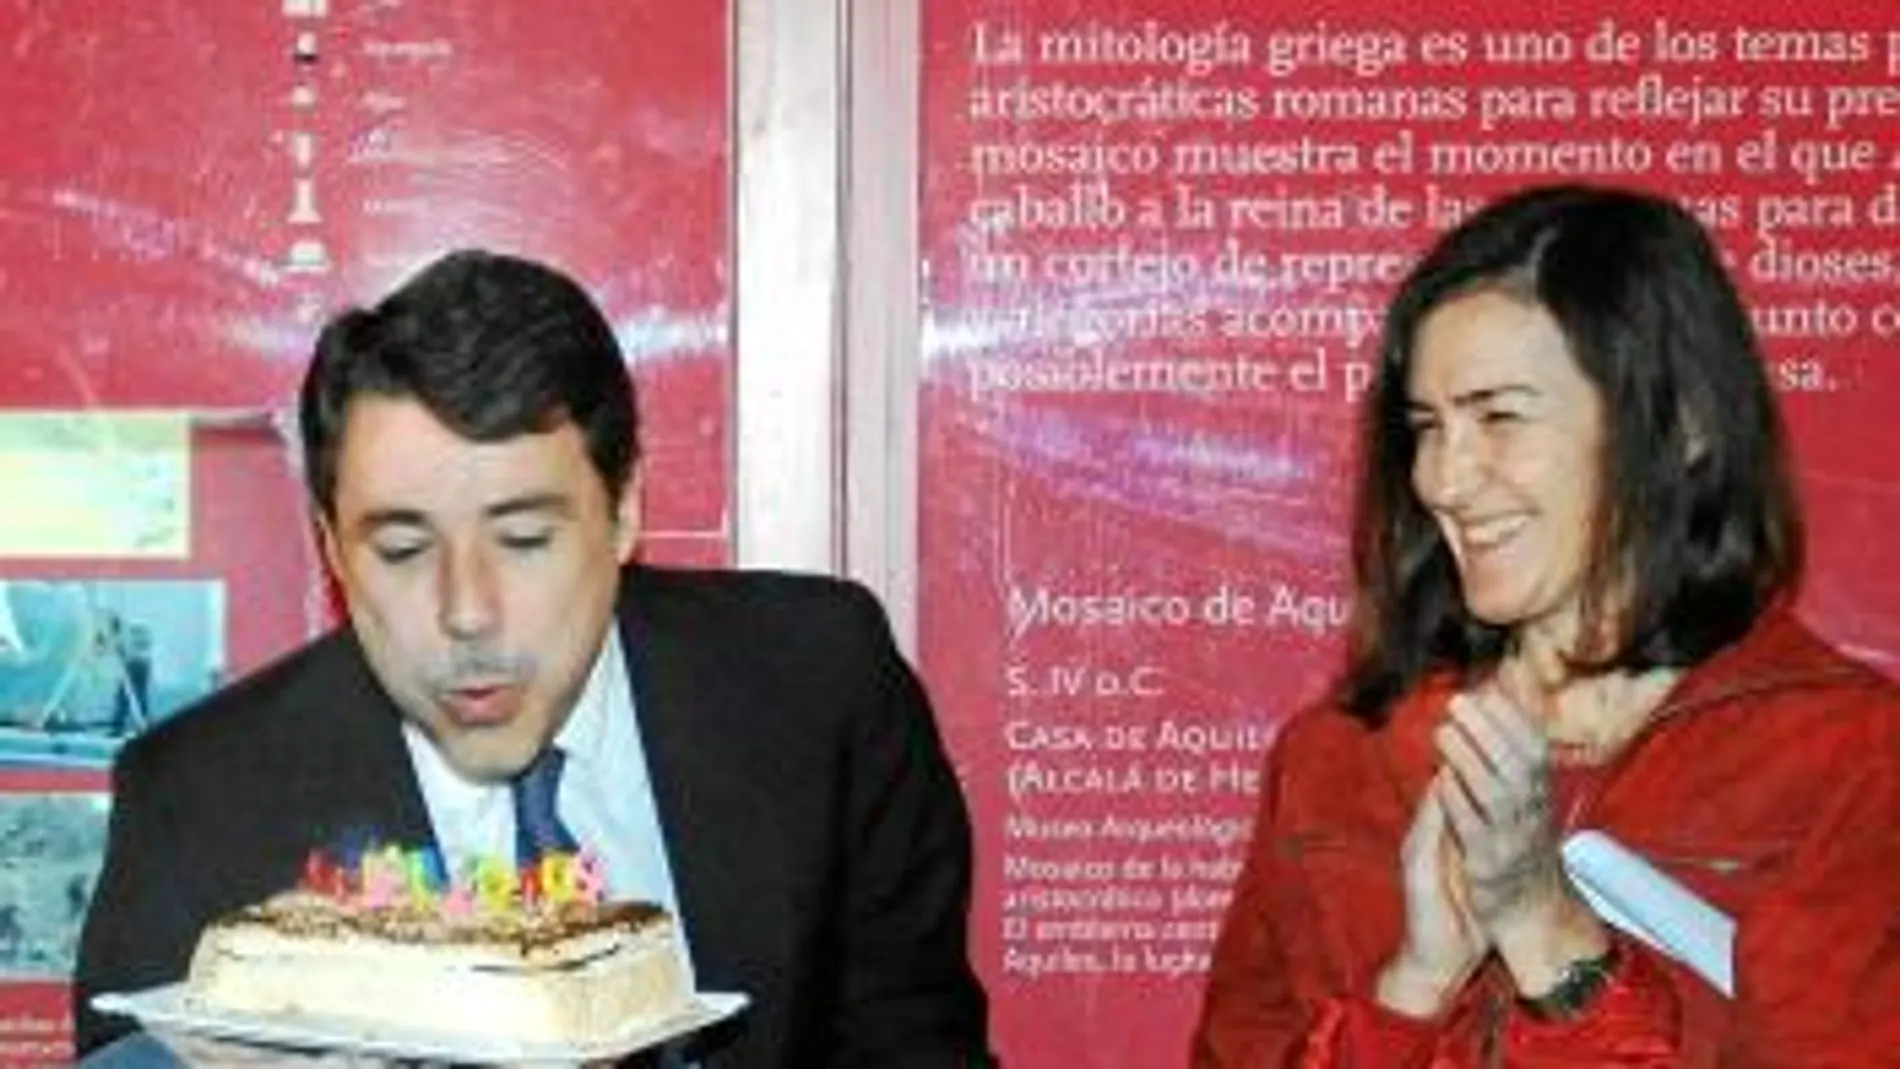 González, junto a González-Sinde, sopló las velas de su 50 cumpleaños